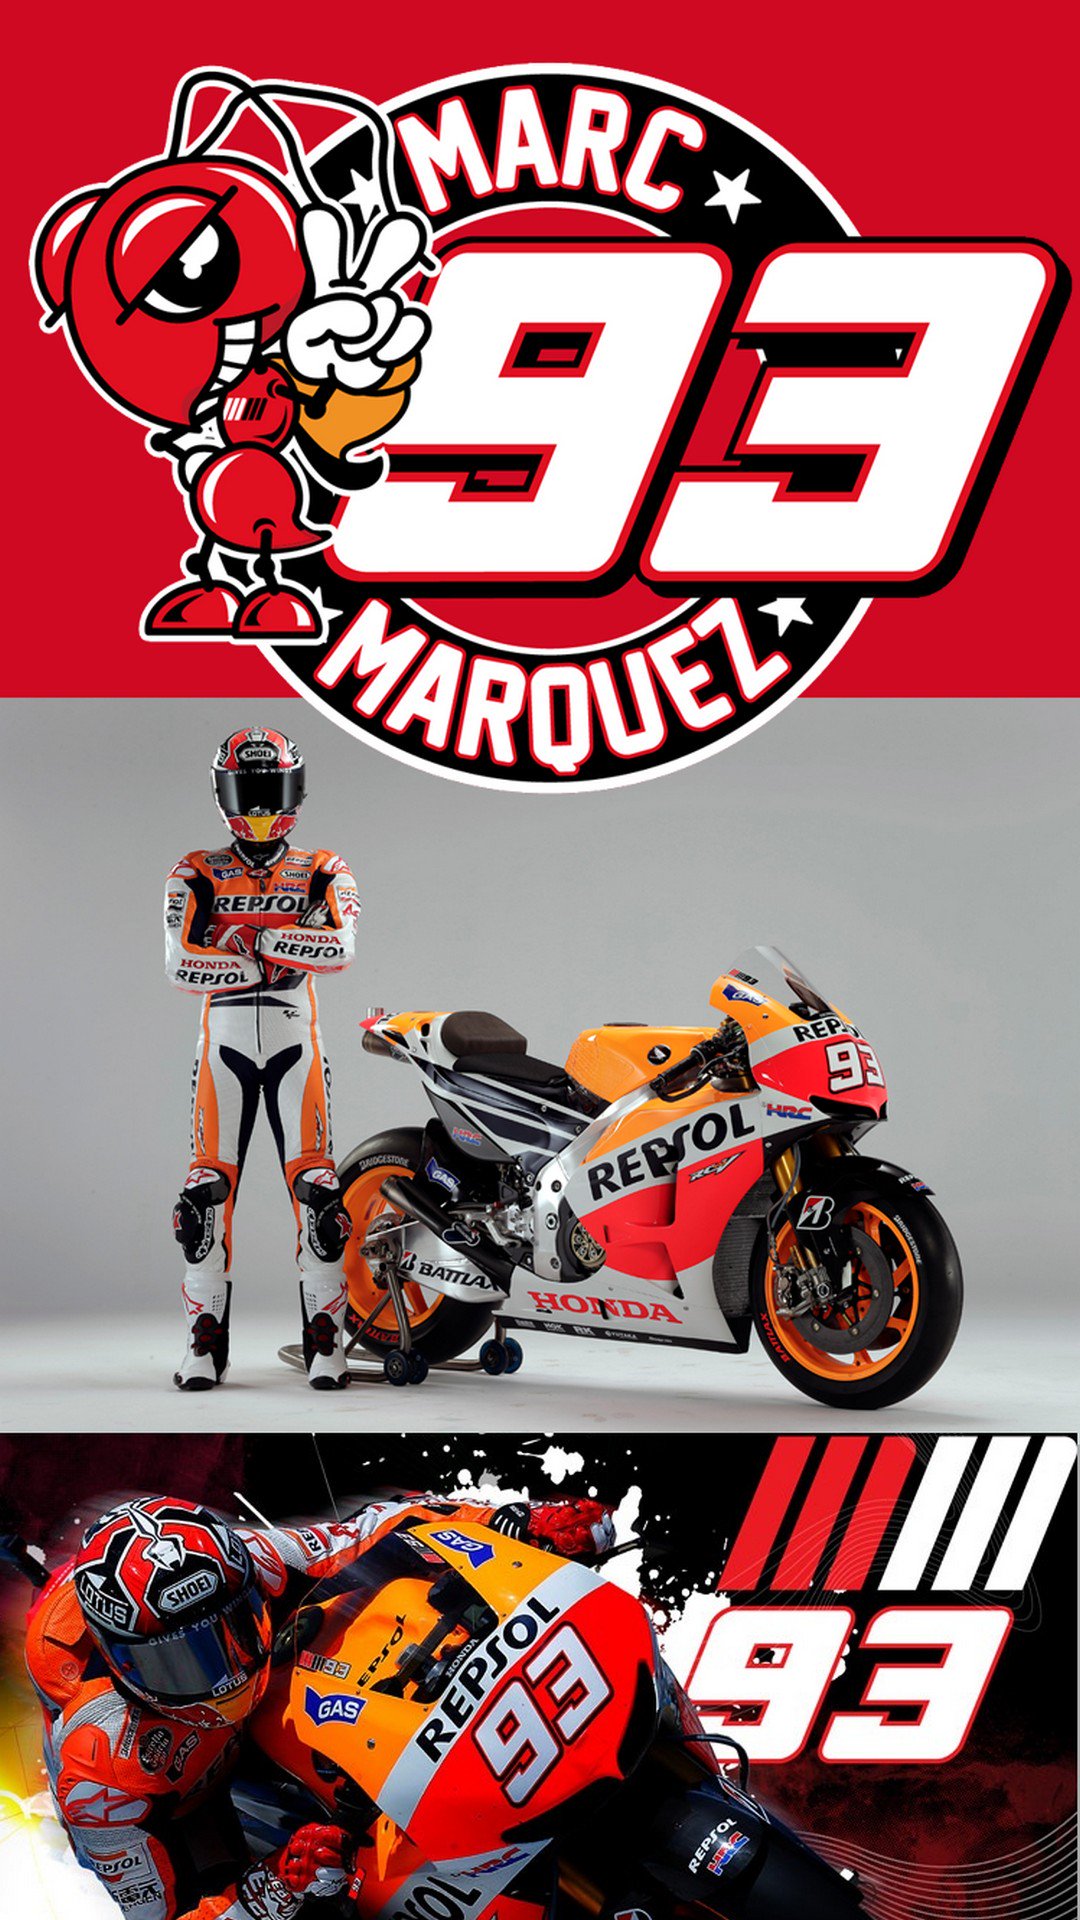 3D iPhone Wallpaper en Twitter: Motogp Marc Marquez iPhone Wallpaper #Sports #iPhone #Marc